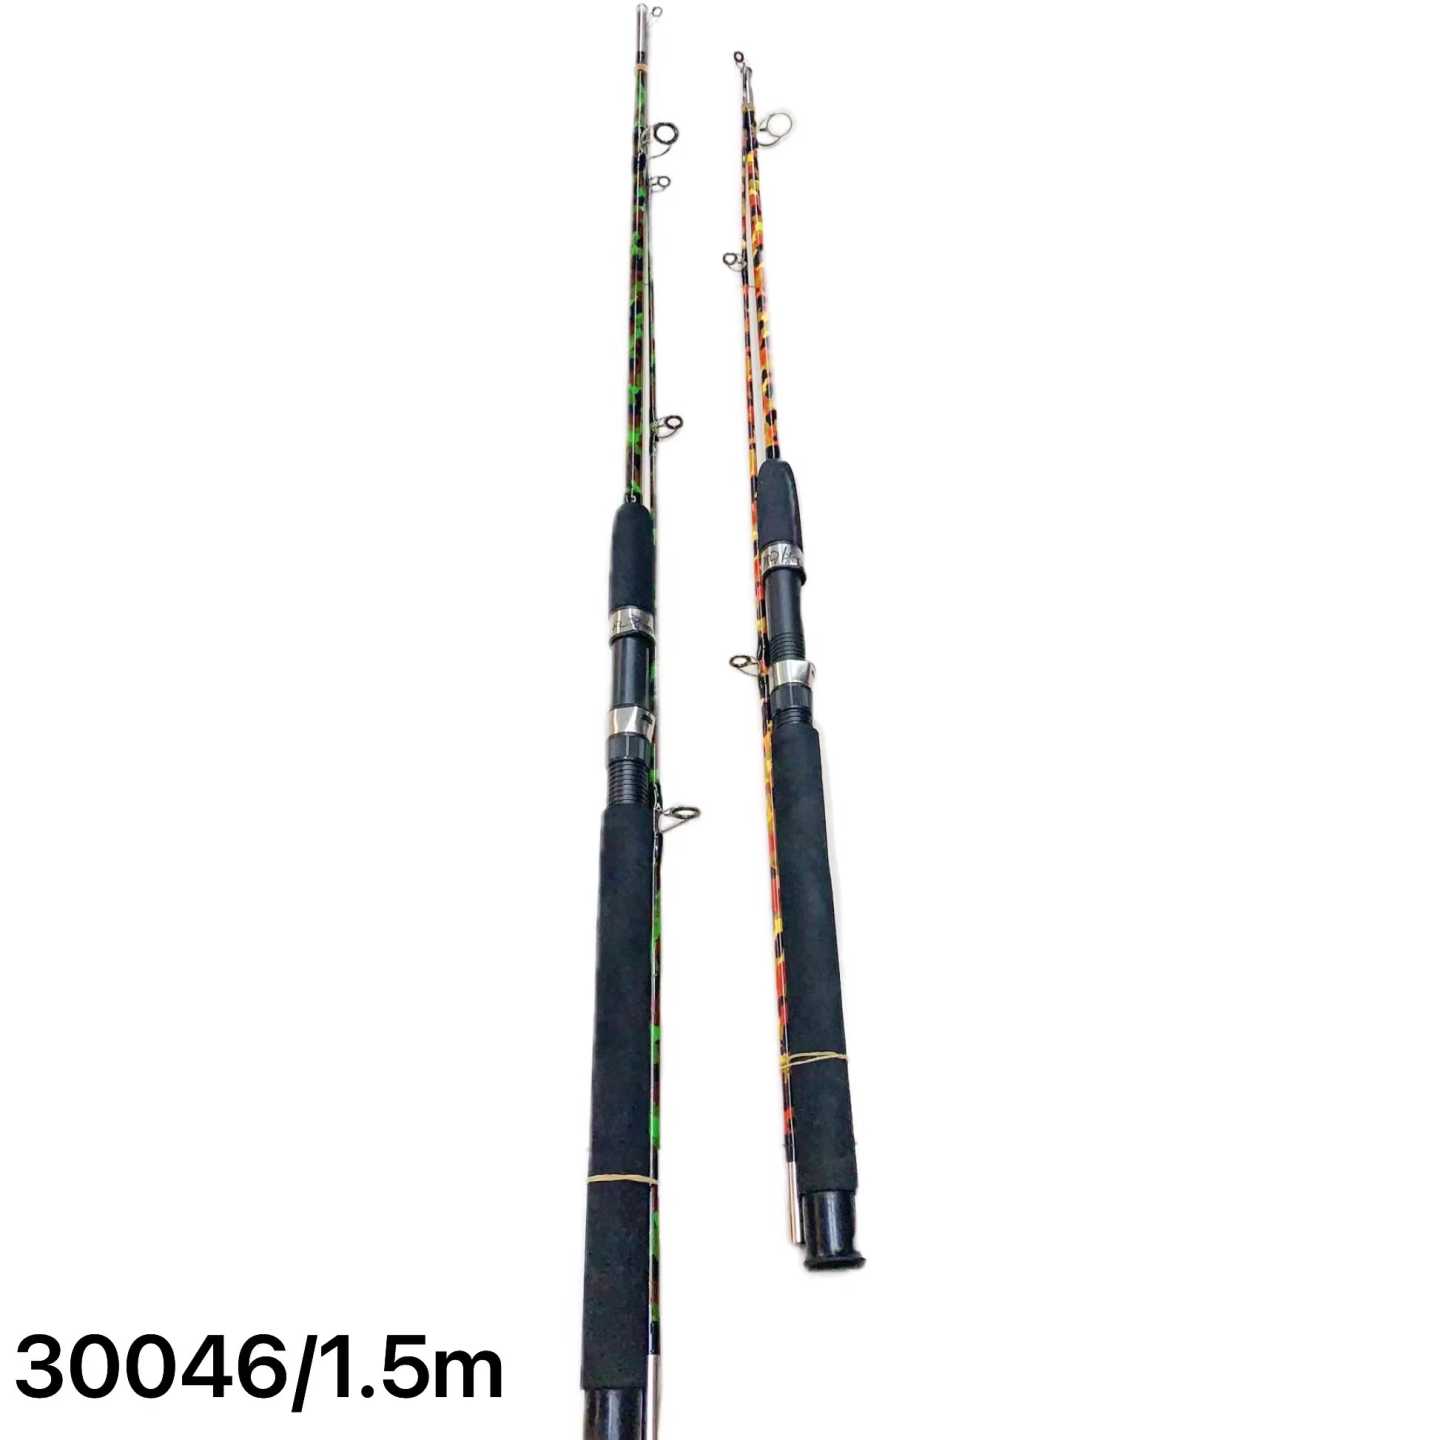 Καλάμι ψαρέματος – Δίσπαστο – 1.5m – 30046 Κωδικός: 30046